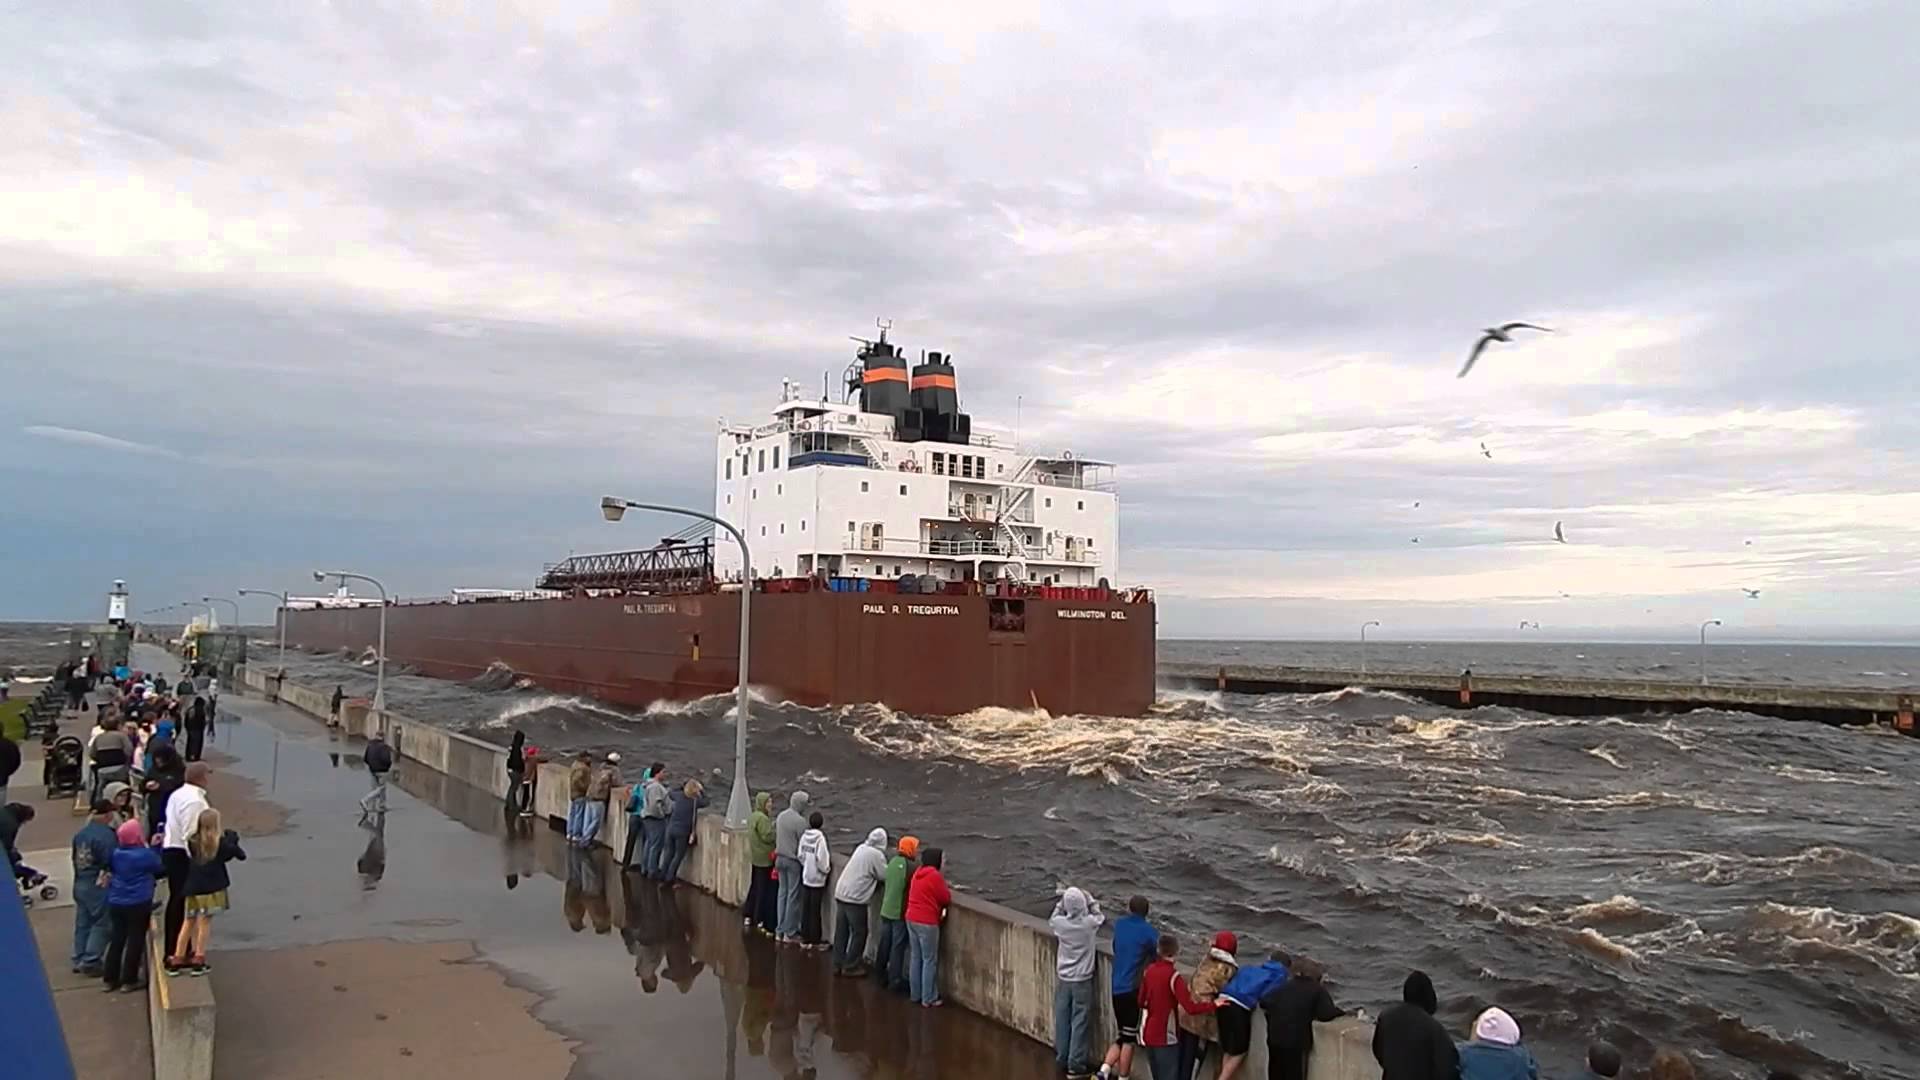 Giant ship photo